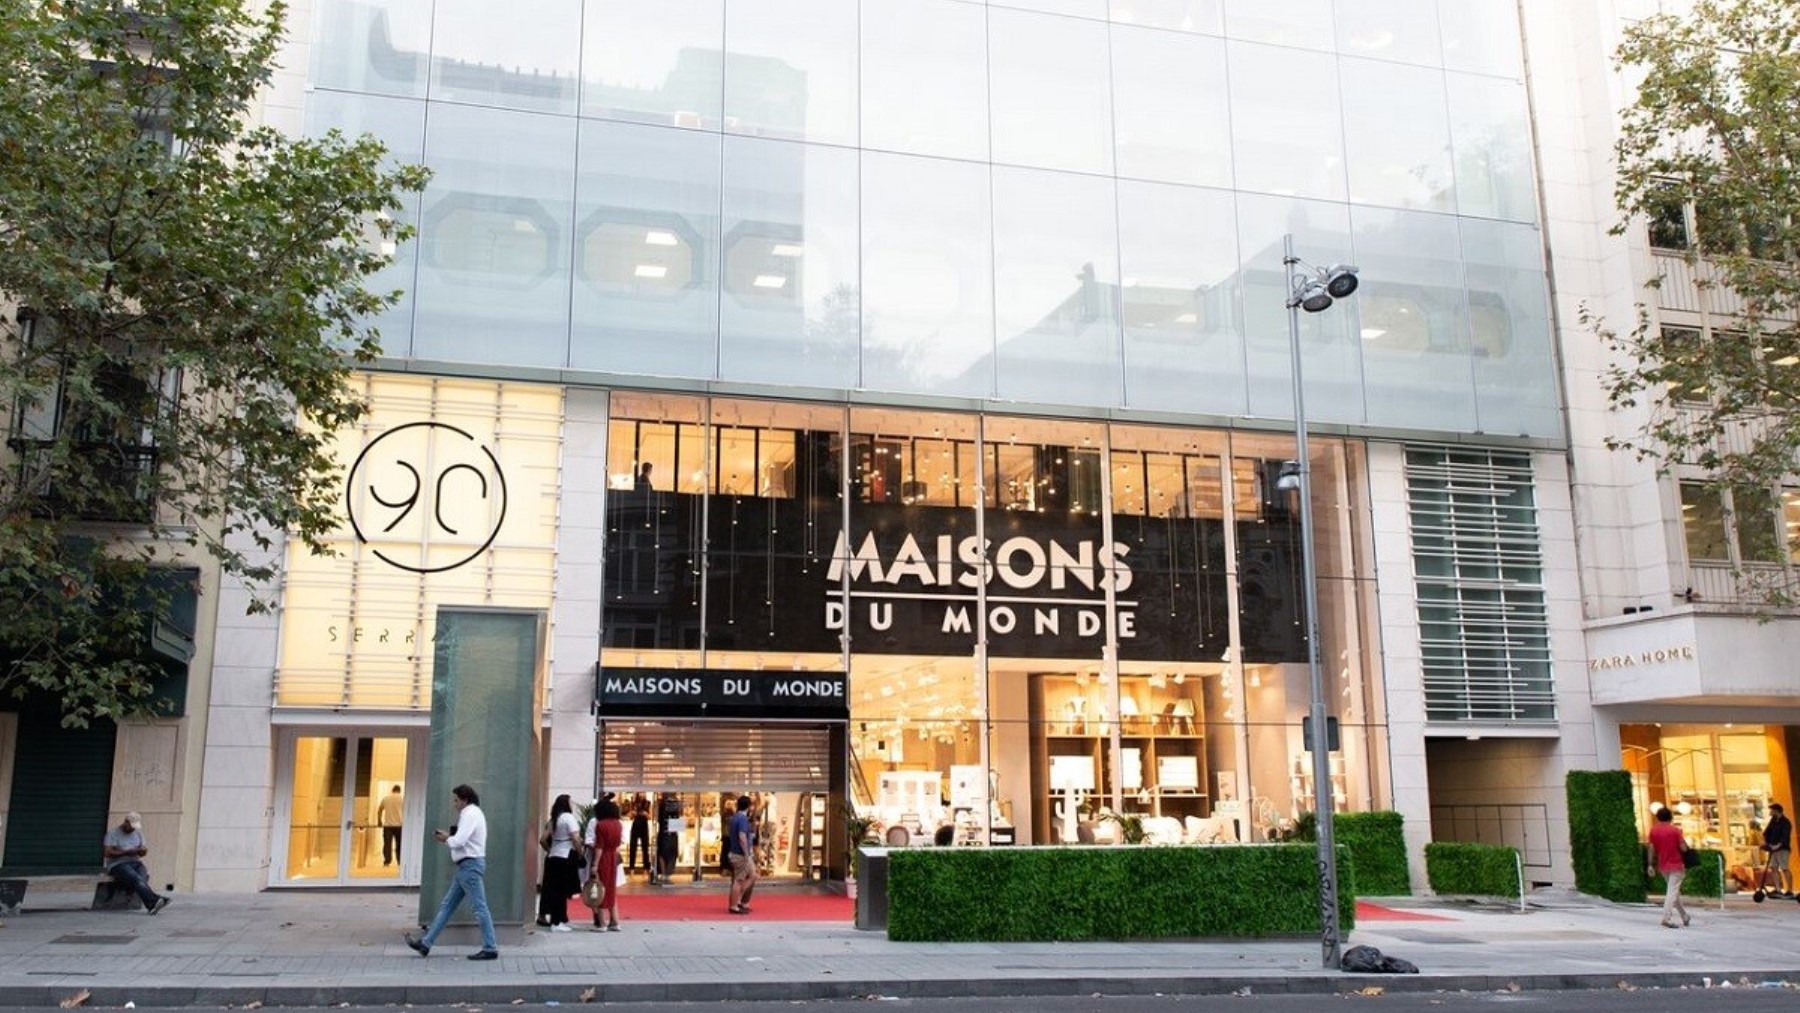 El mueble nórdico de Maisons du Monde que ya tienen todos los empleados de la tienda